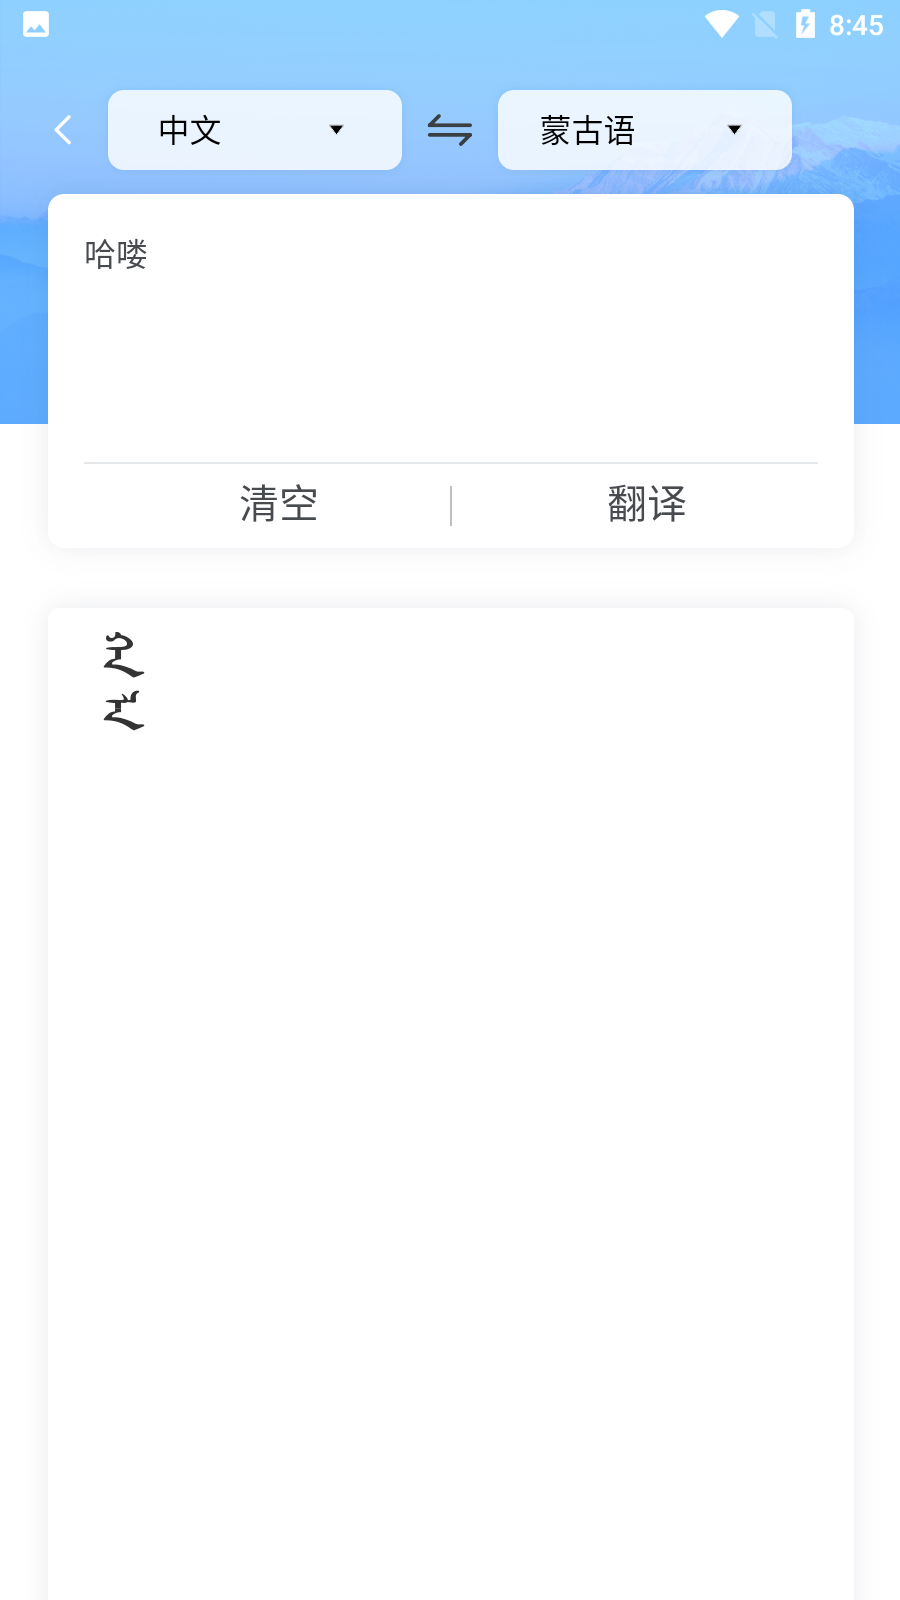 蒙古文翻译词典appv1.4.4